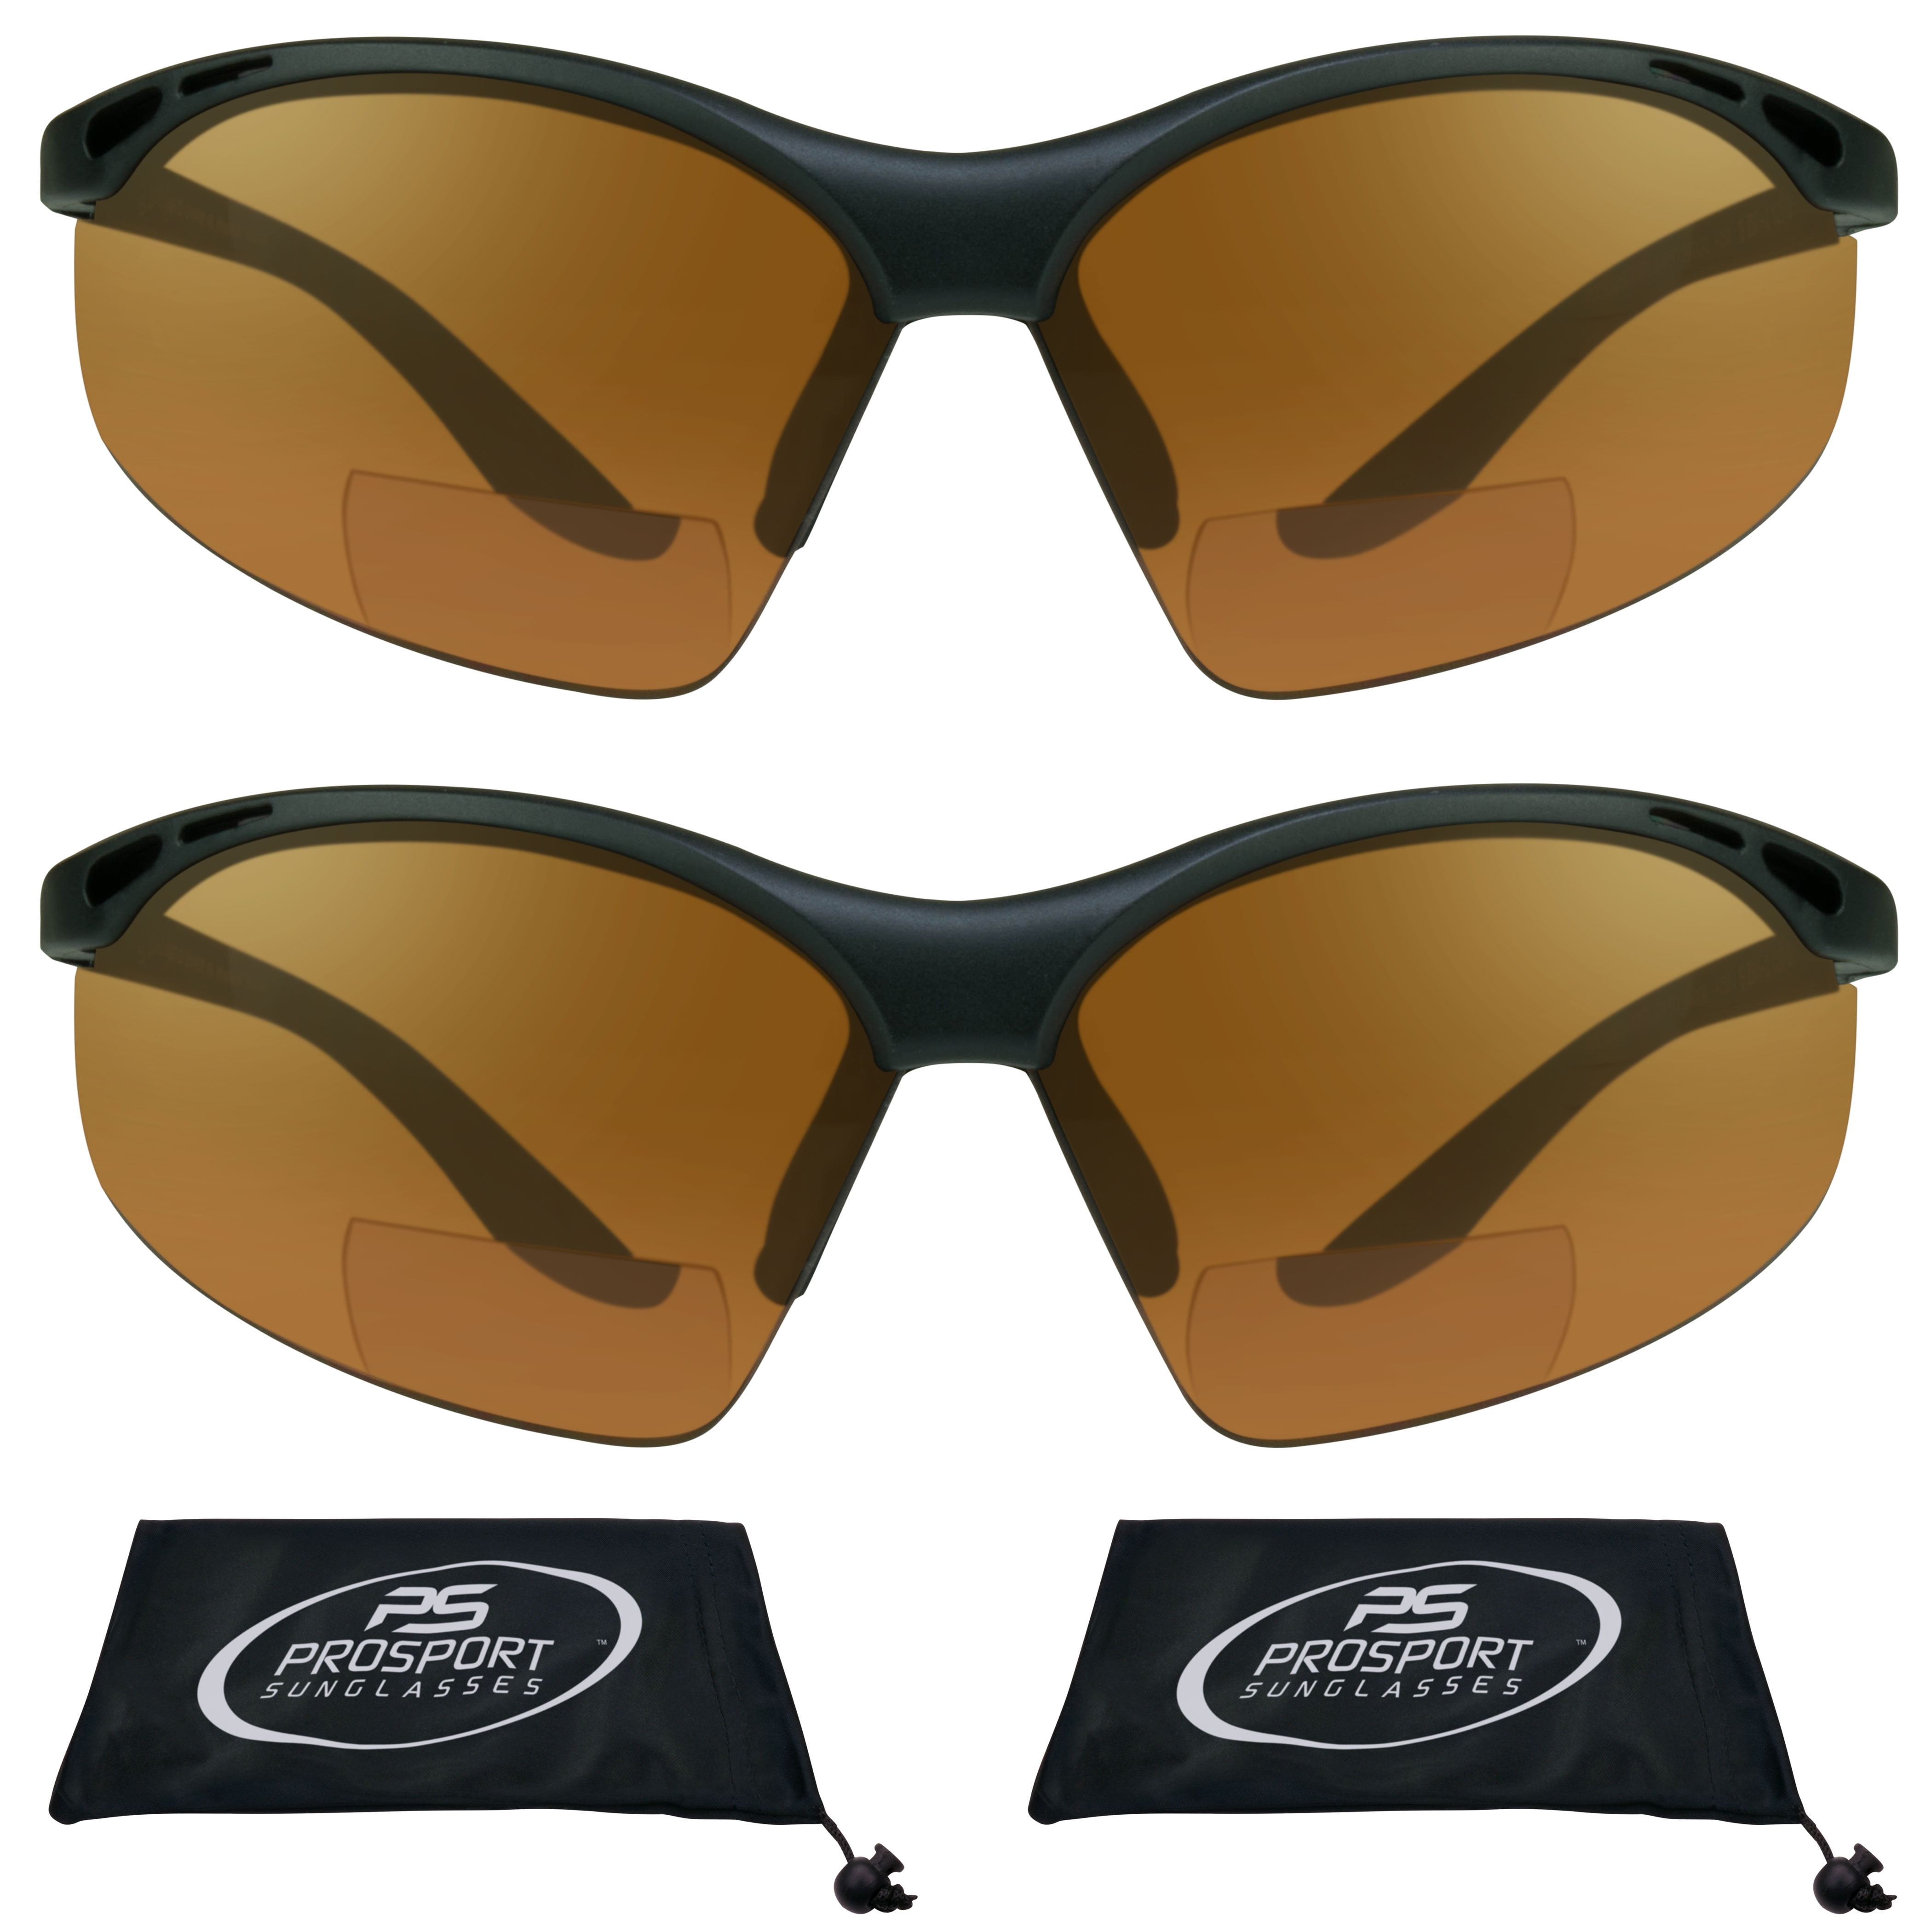 1 x LOT Bifocal Safety Reading Sunglasses Glasses Reader ANSI UV400 Men Women 